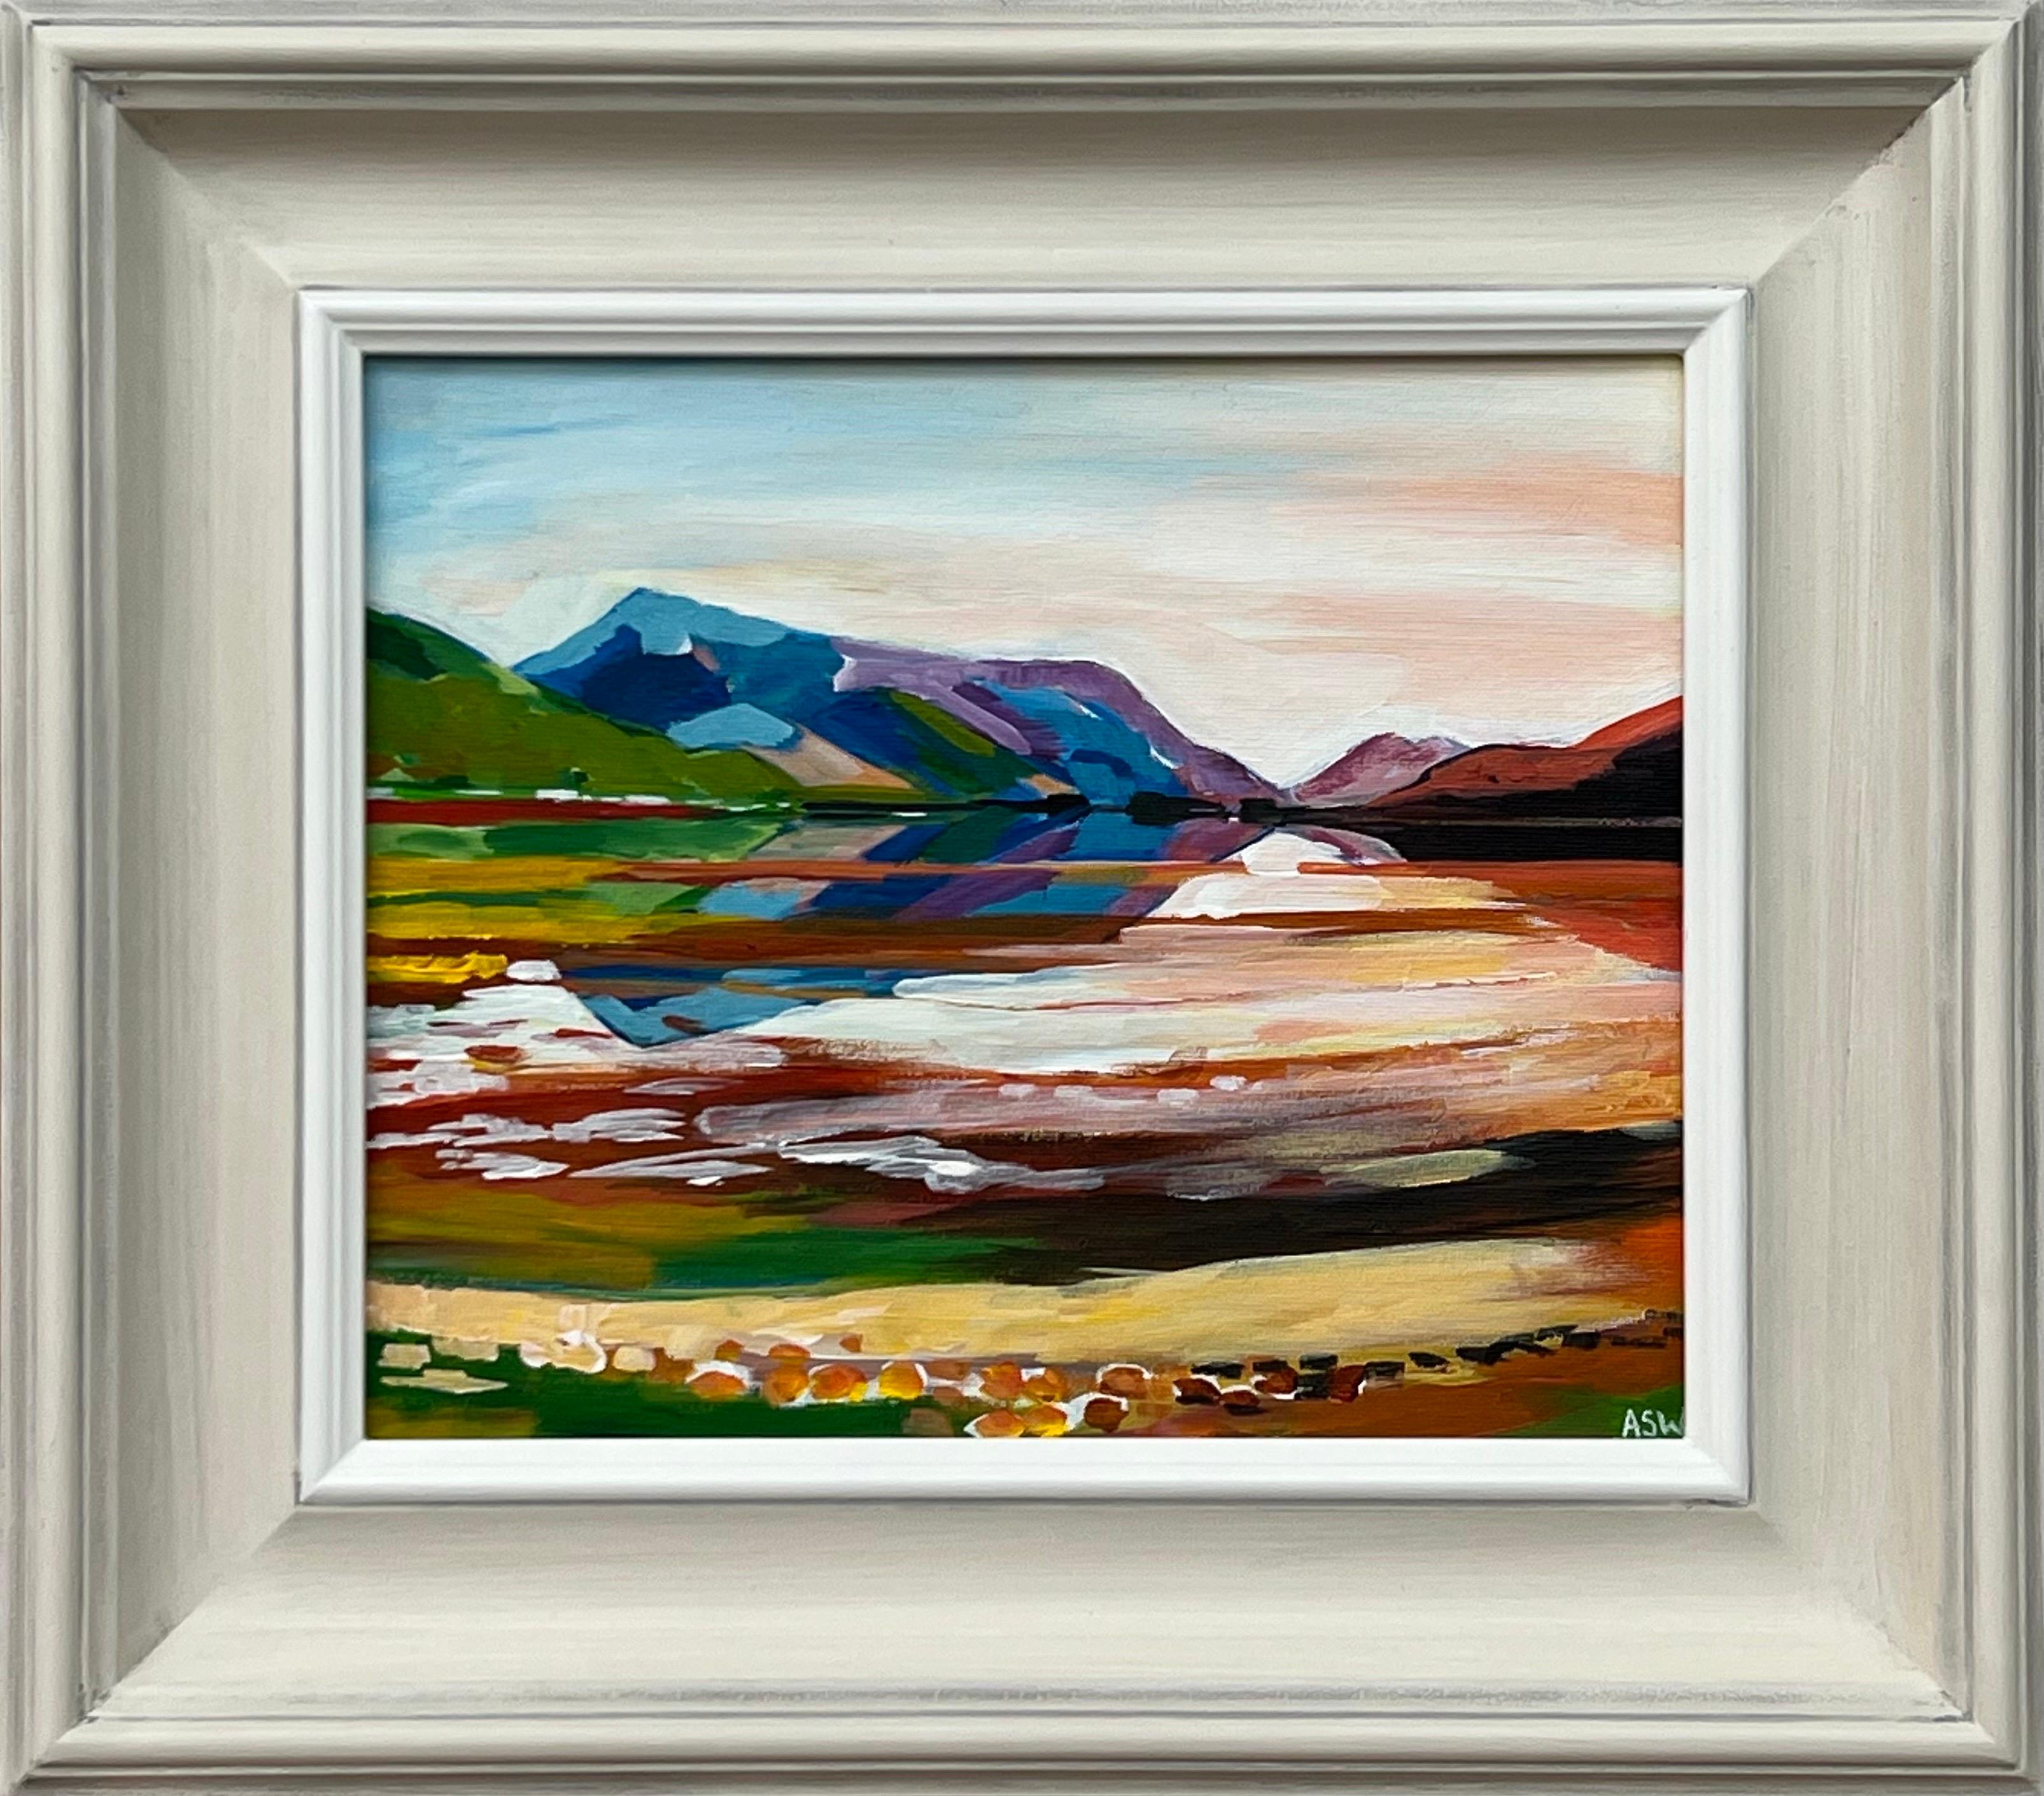 Farbenfrohes Landschaftsgemälde der schottischen Highlands des zeitgenössischen Künstlers